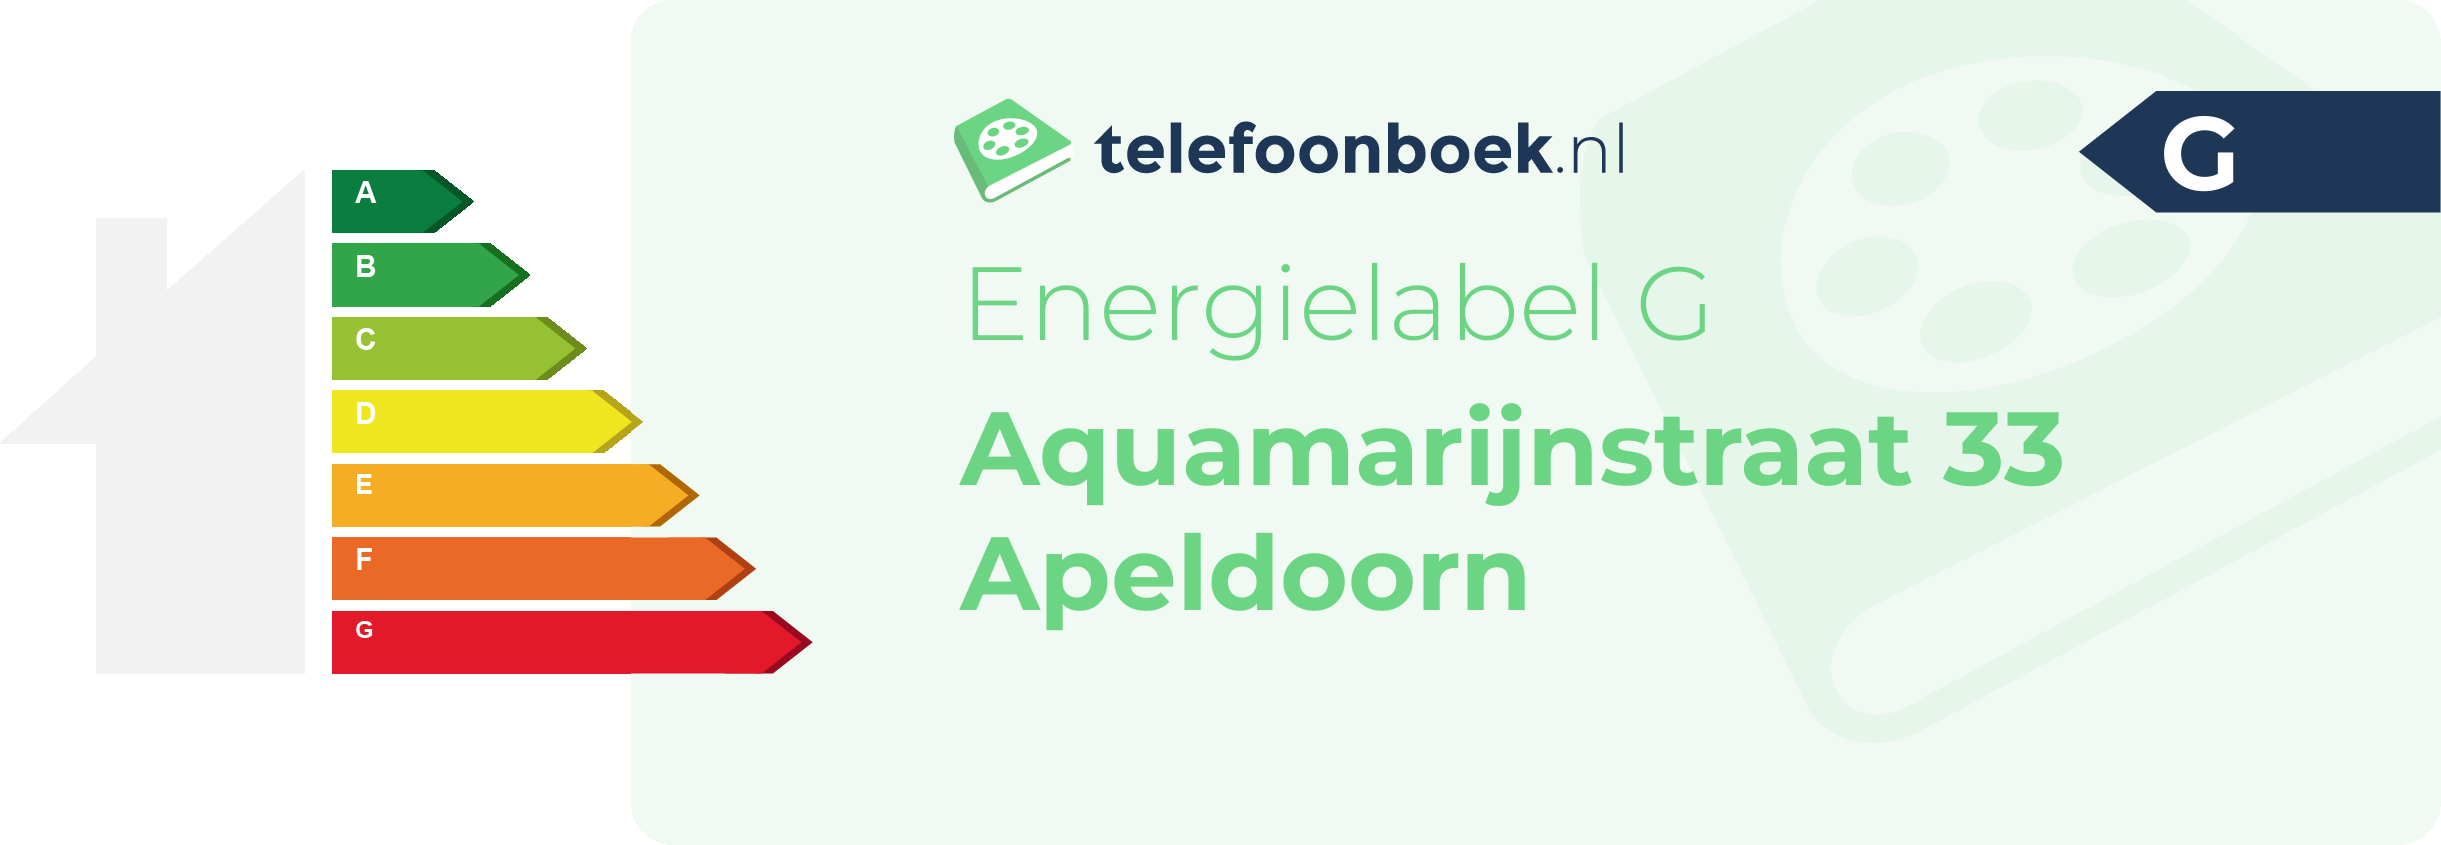 Energielabel Aquamarijnstraat 33 Apeldoorn